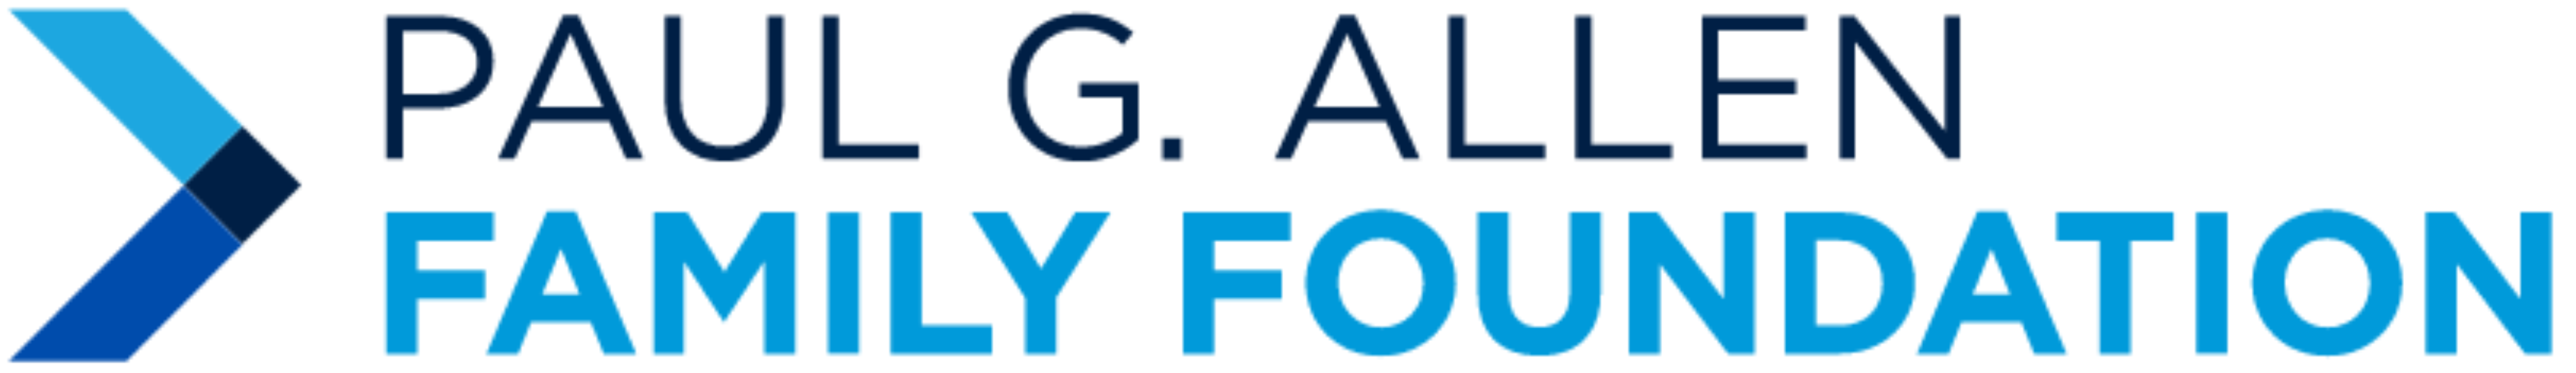 Paul G. Allen Family Foundation logo